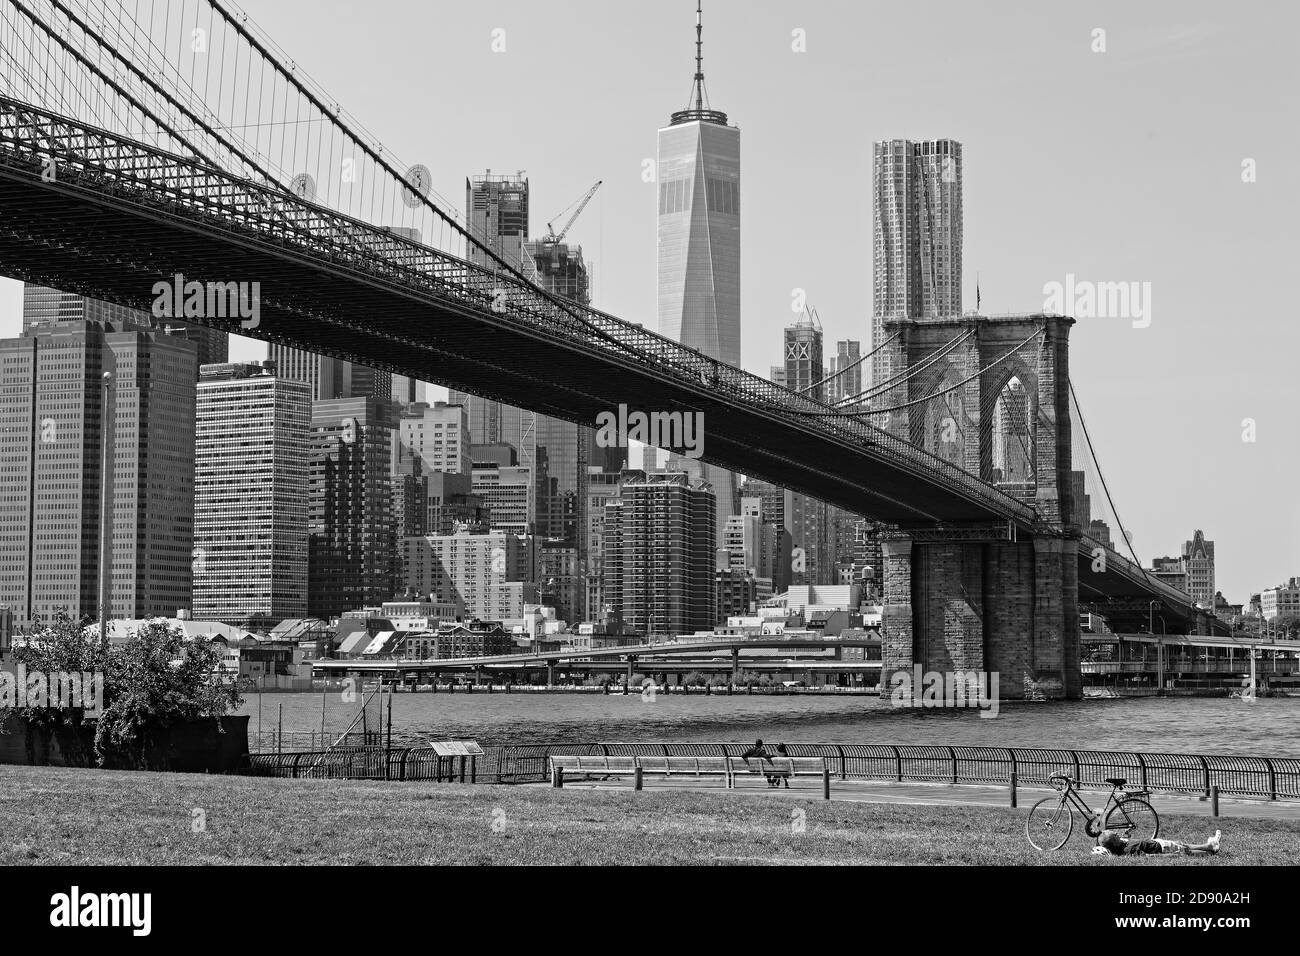 NEW YORK CITY, USA, 11 septembre 2017 : repos dans le parc Brookyn Bridge le long de East River. Le pont de Brooklyn est l'un des plus anciens ponts des États-Unis. Il Banque D'Images